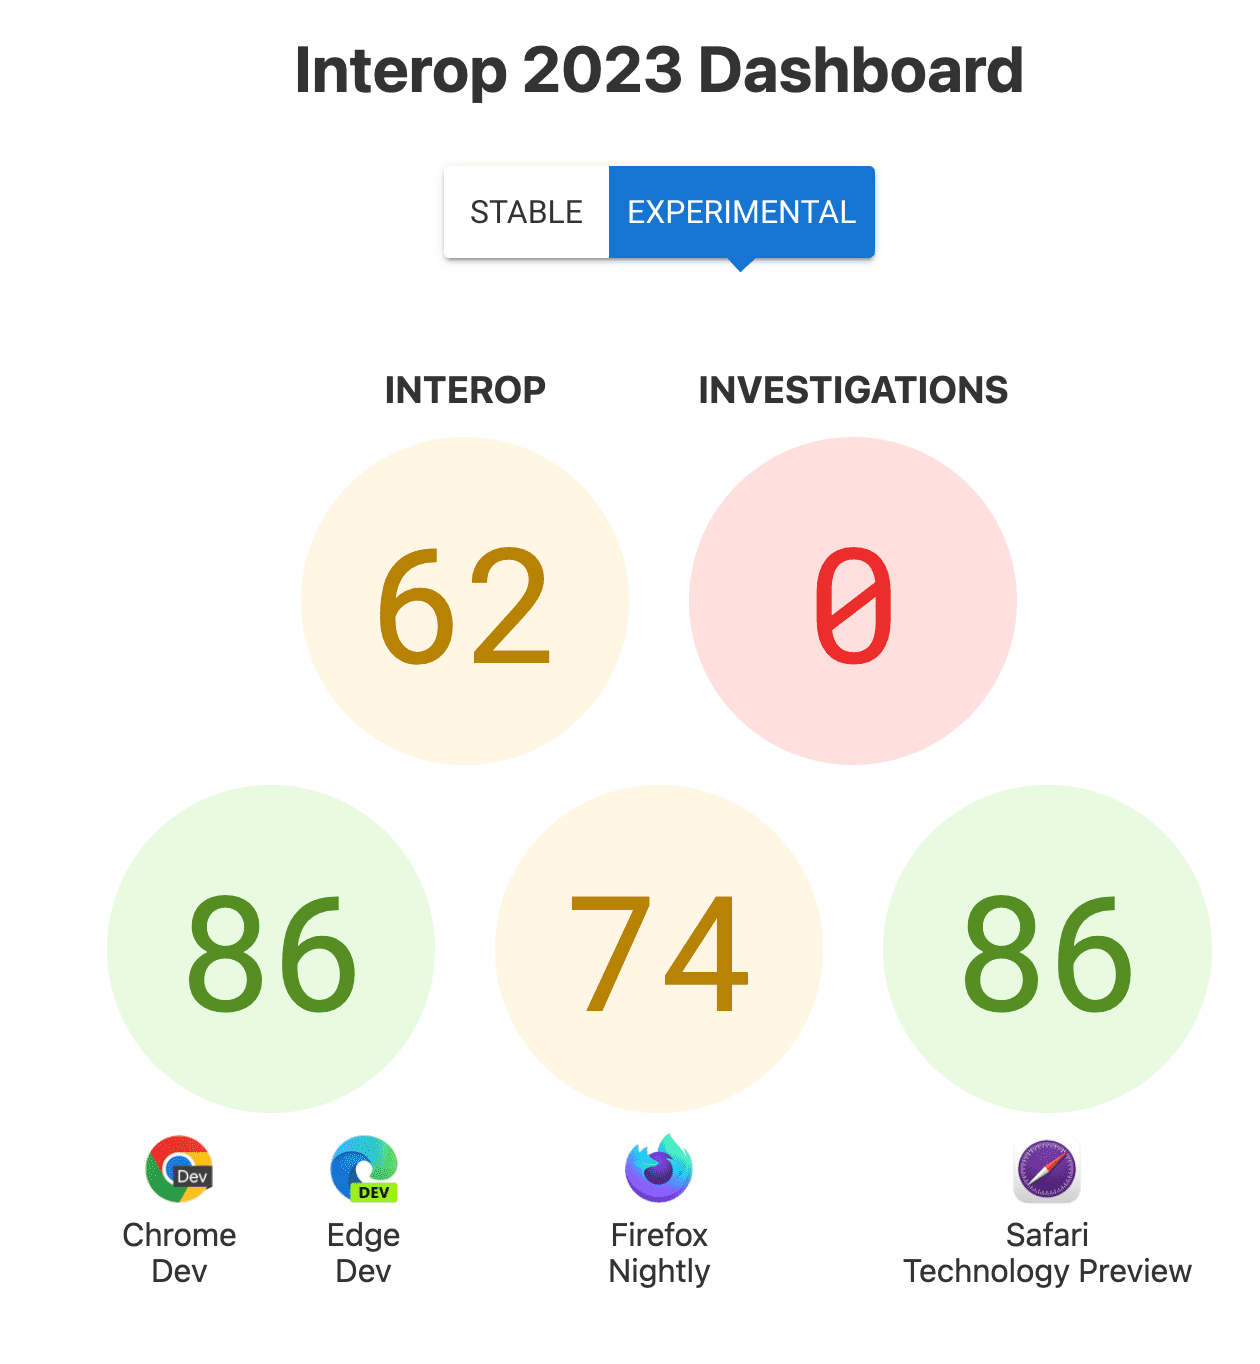 इंटरऑप के लिए कुल स्कोर: 62, जांच: 0, और हर ब्राउज़र के लिए स्कोर - Chrome और Edge के लिए 86, Firefox के लिए 74, Safari तकनीकी झलक के लिए 86.